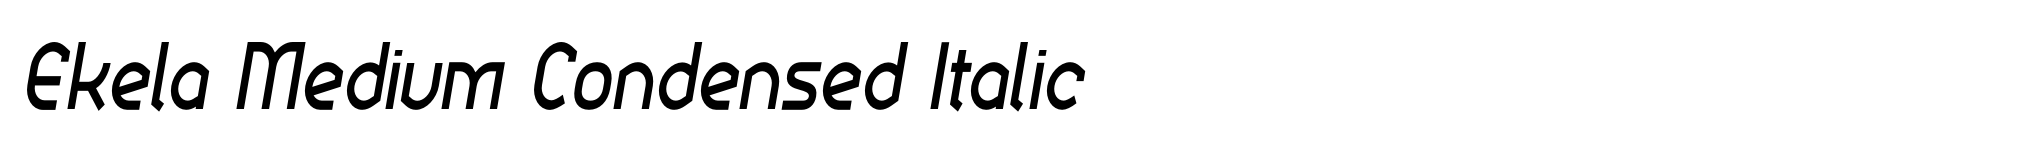 Ekela Medium Condensed Italic image